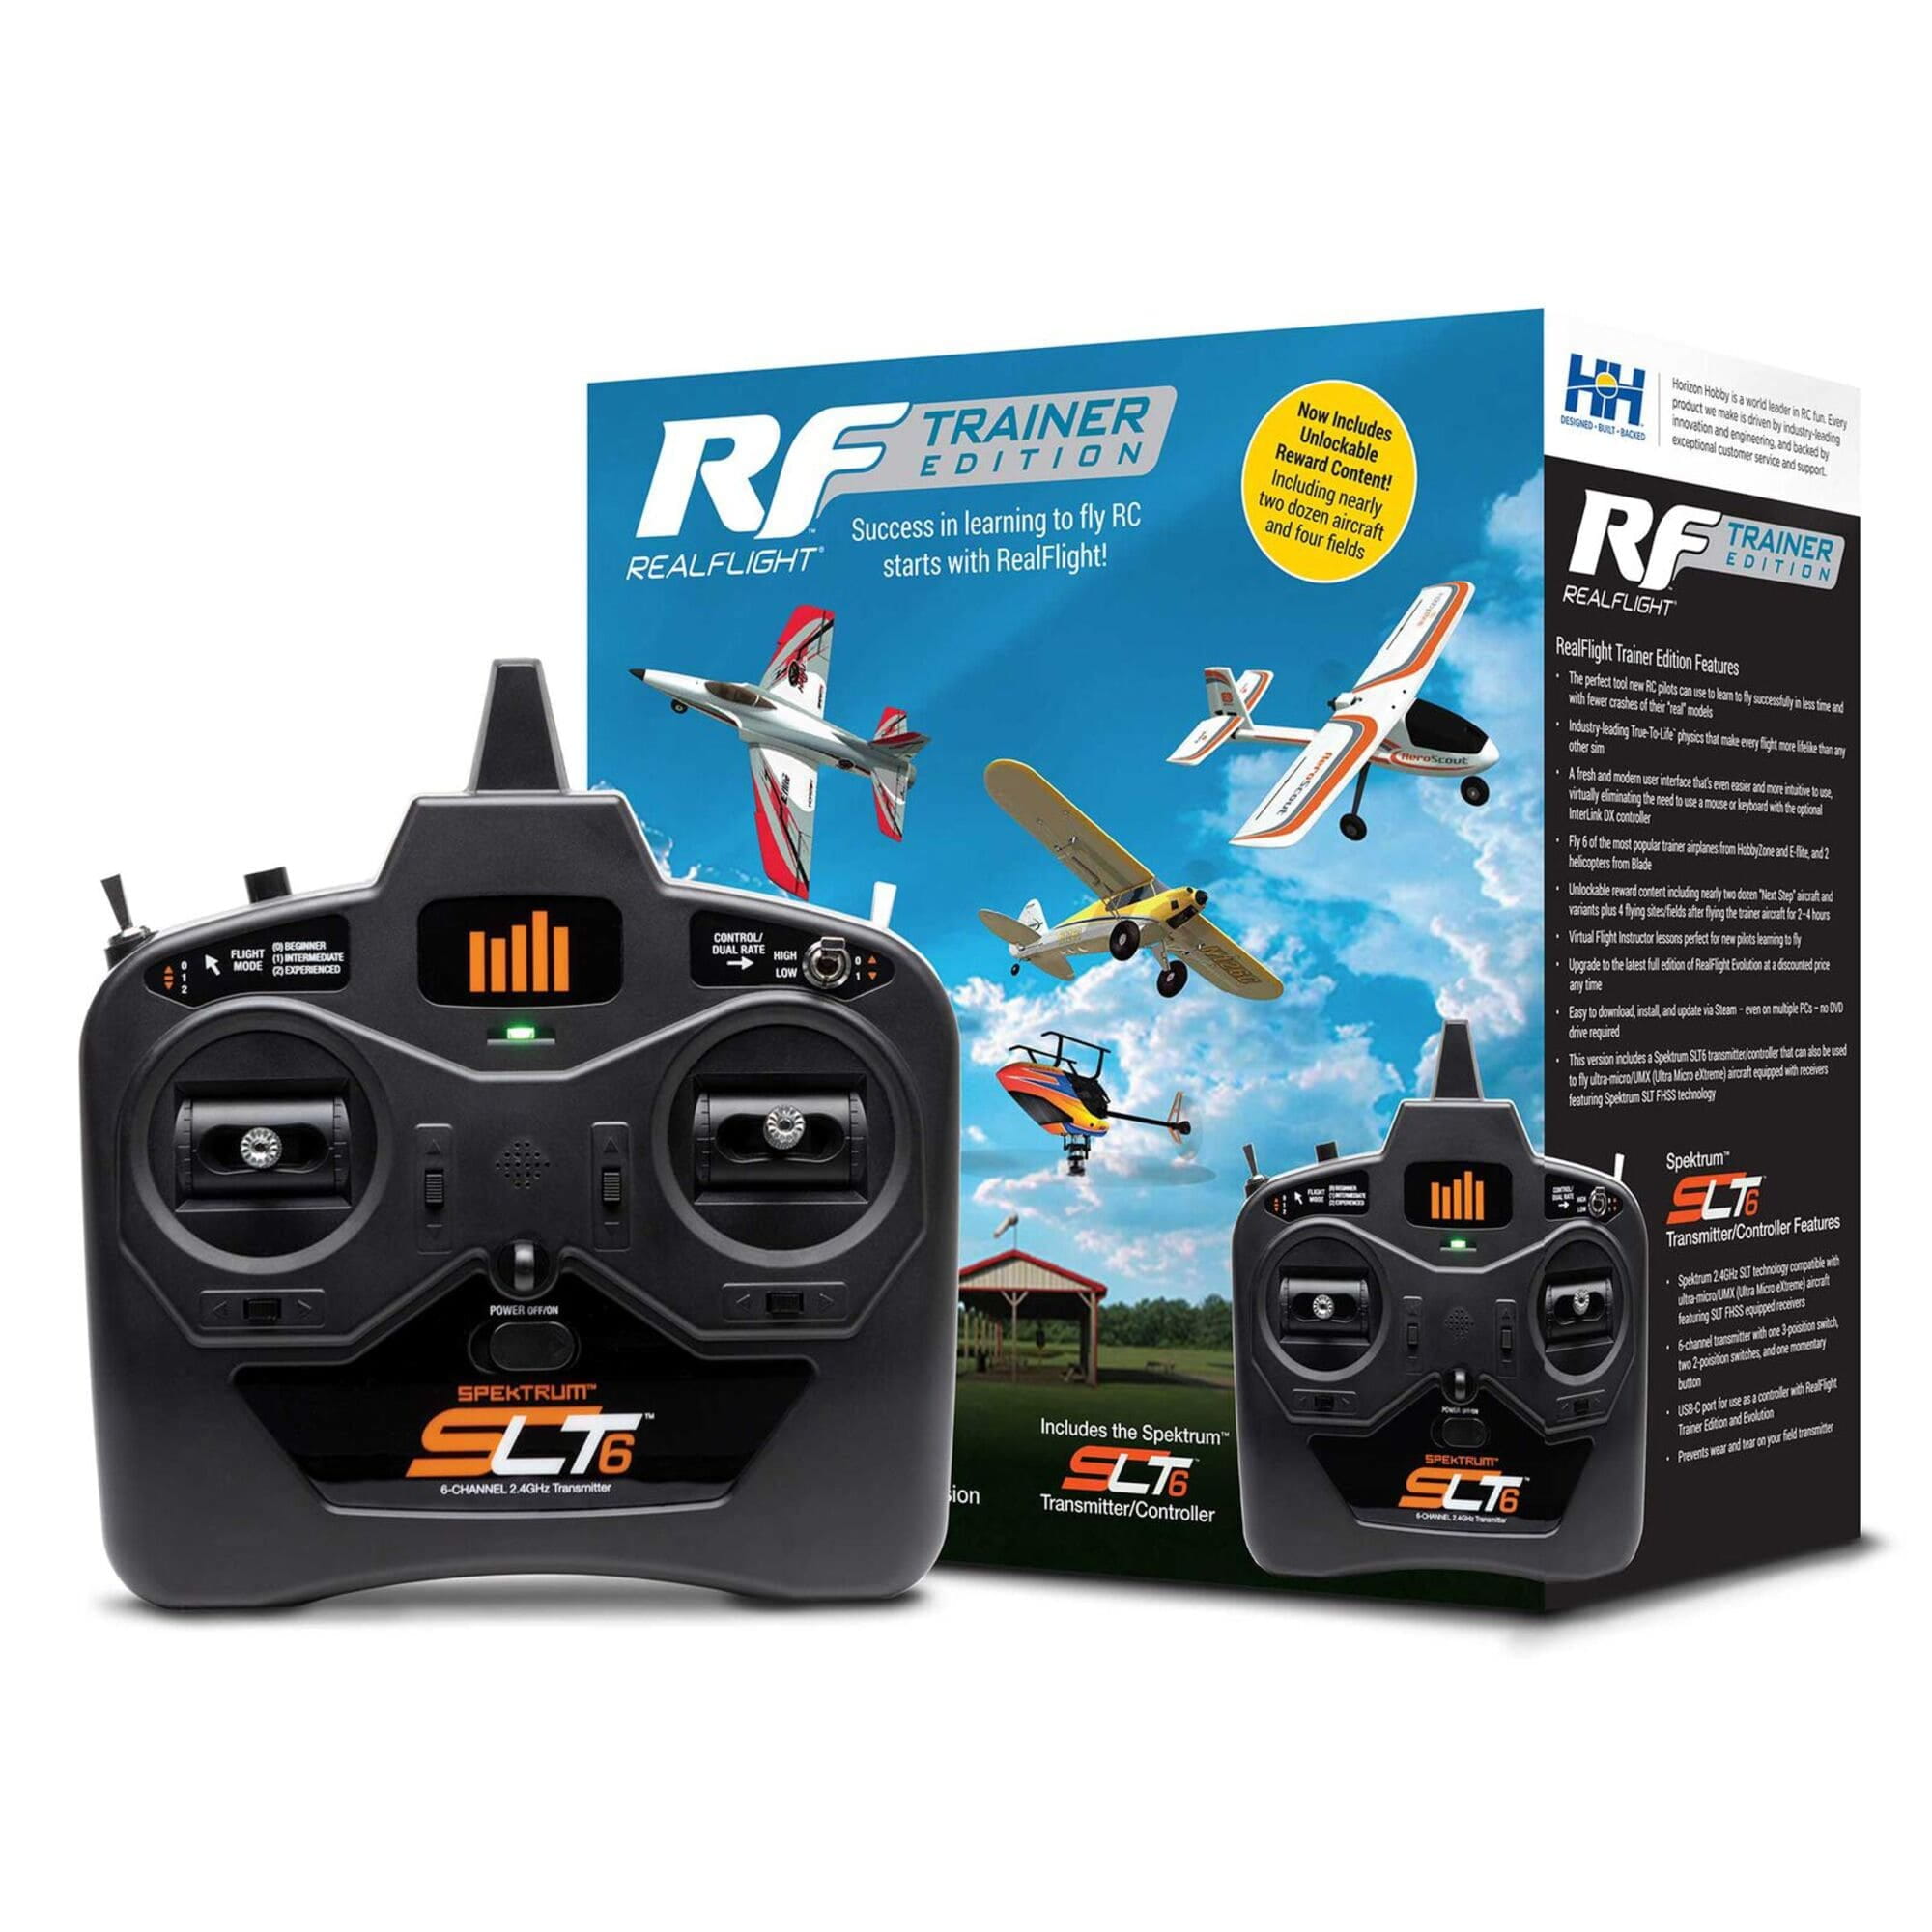 RealFlight Flug Simulator Trainer Edition mit SLT6 Fernsteuerung